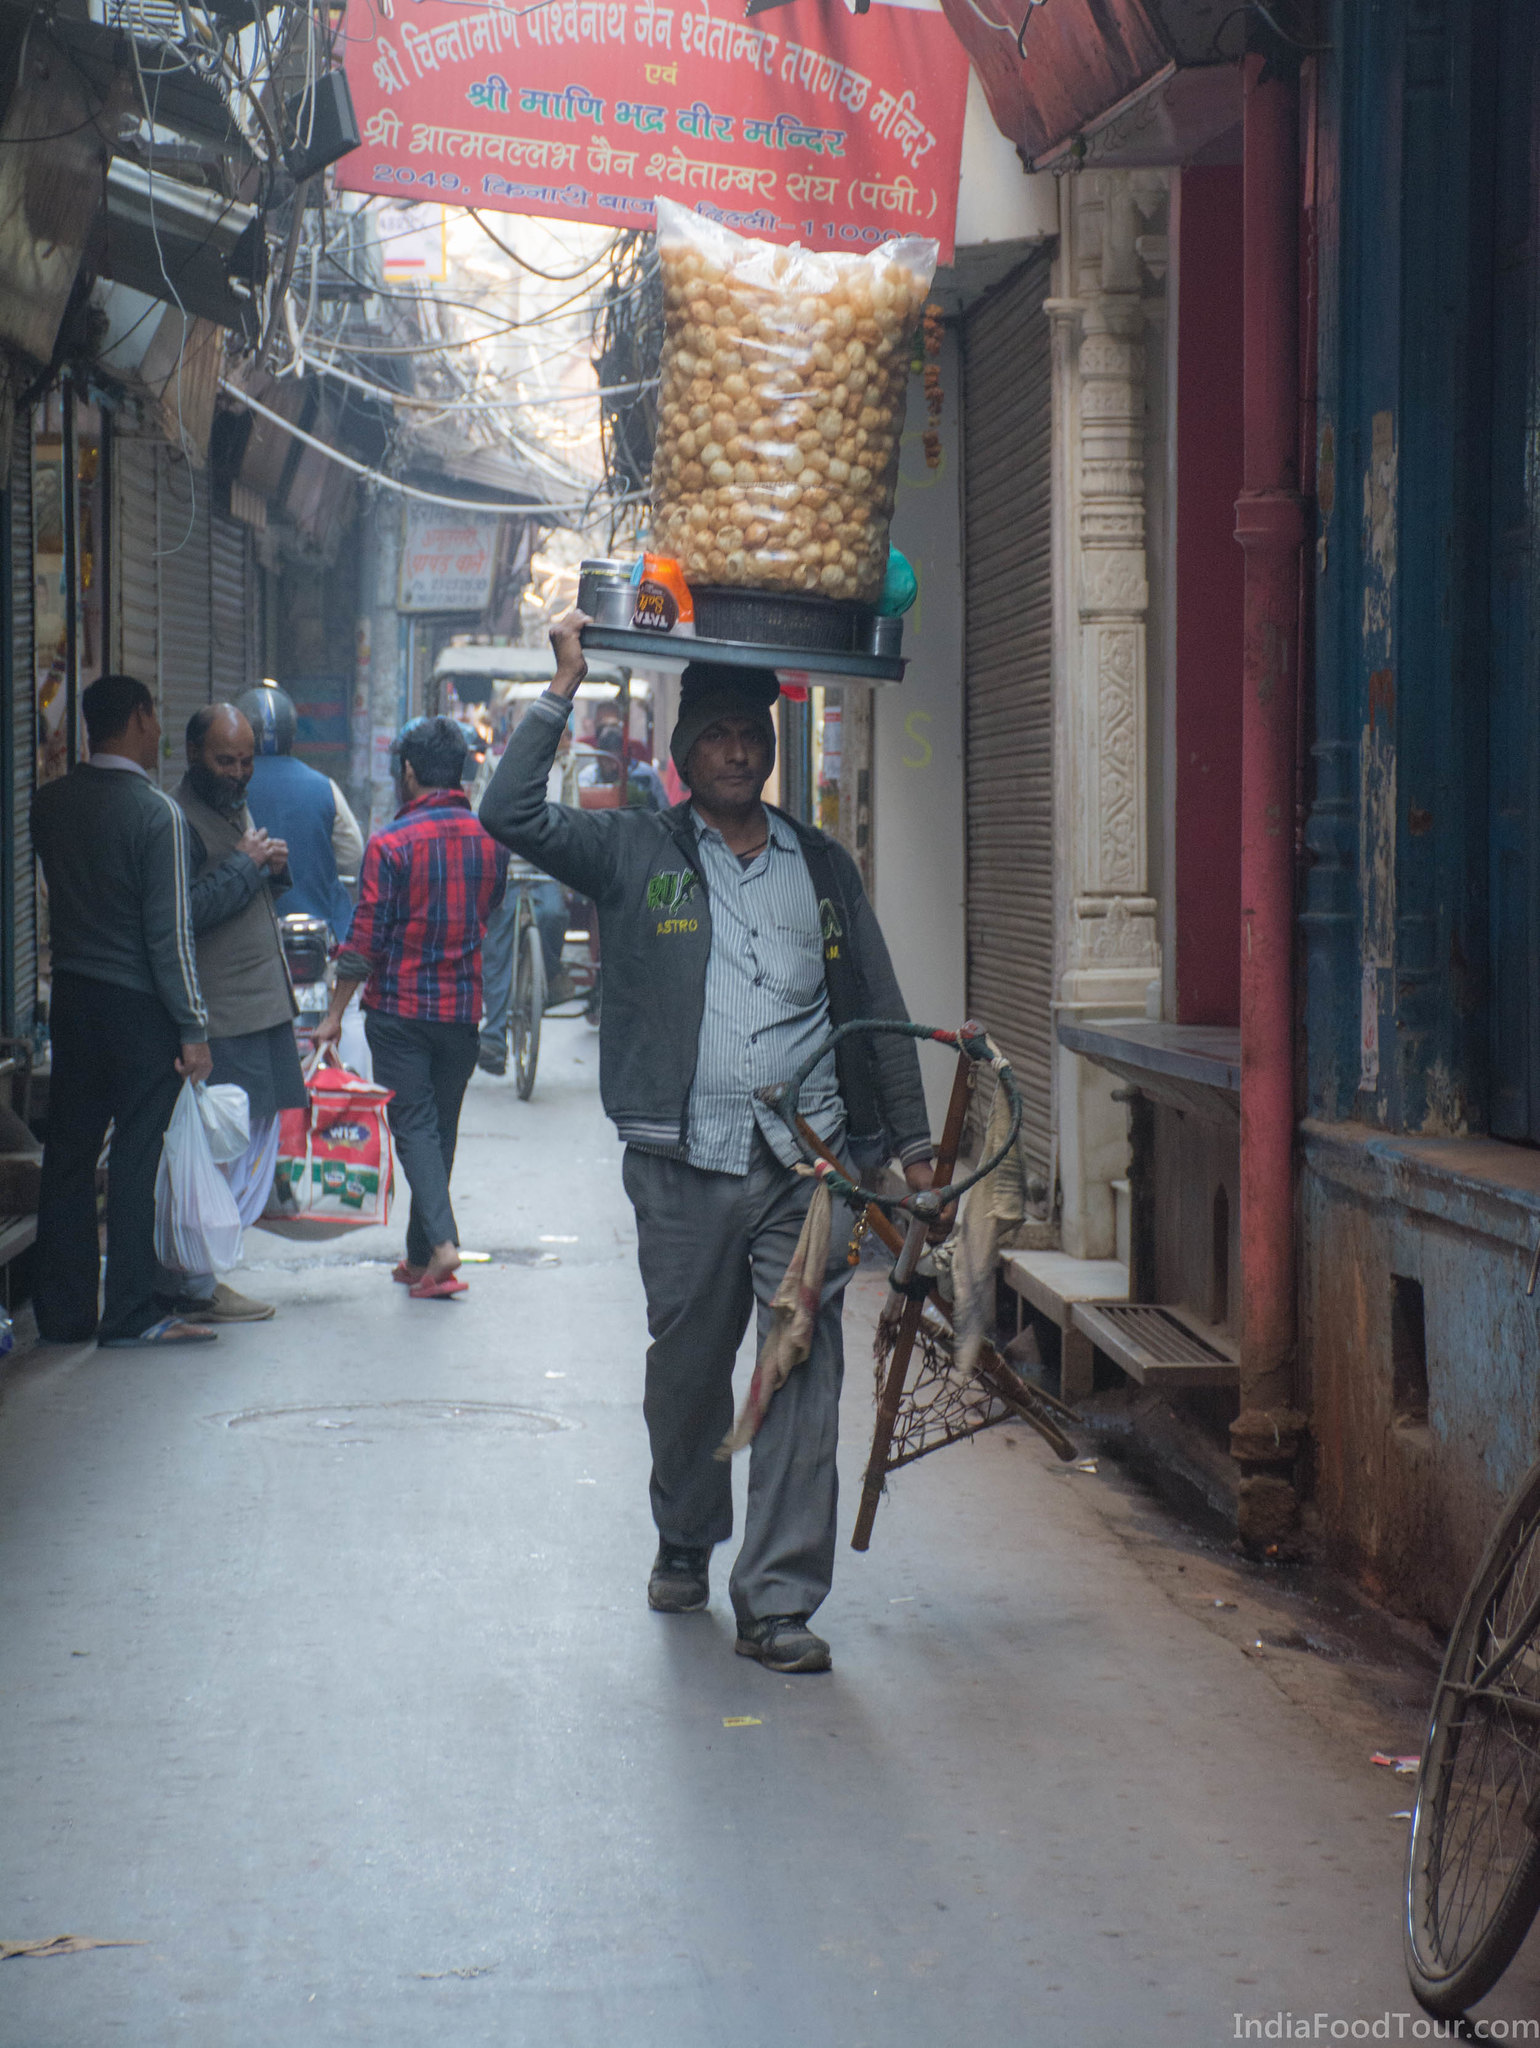 A Golgappa vendor walking through Kinari Bazar